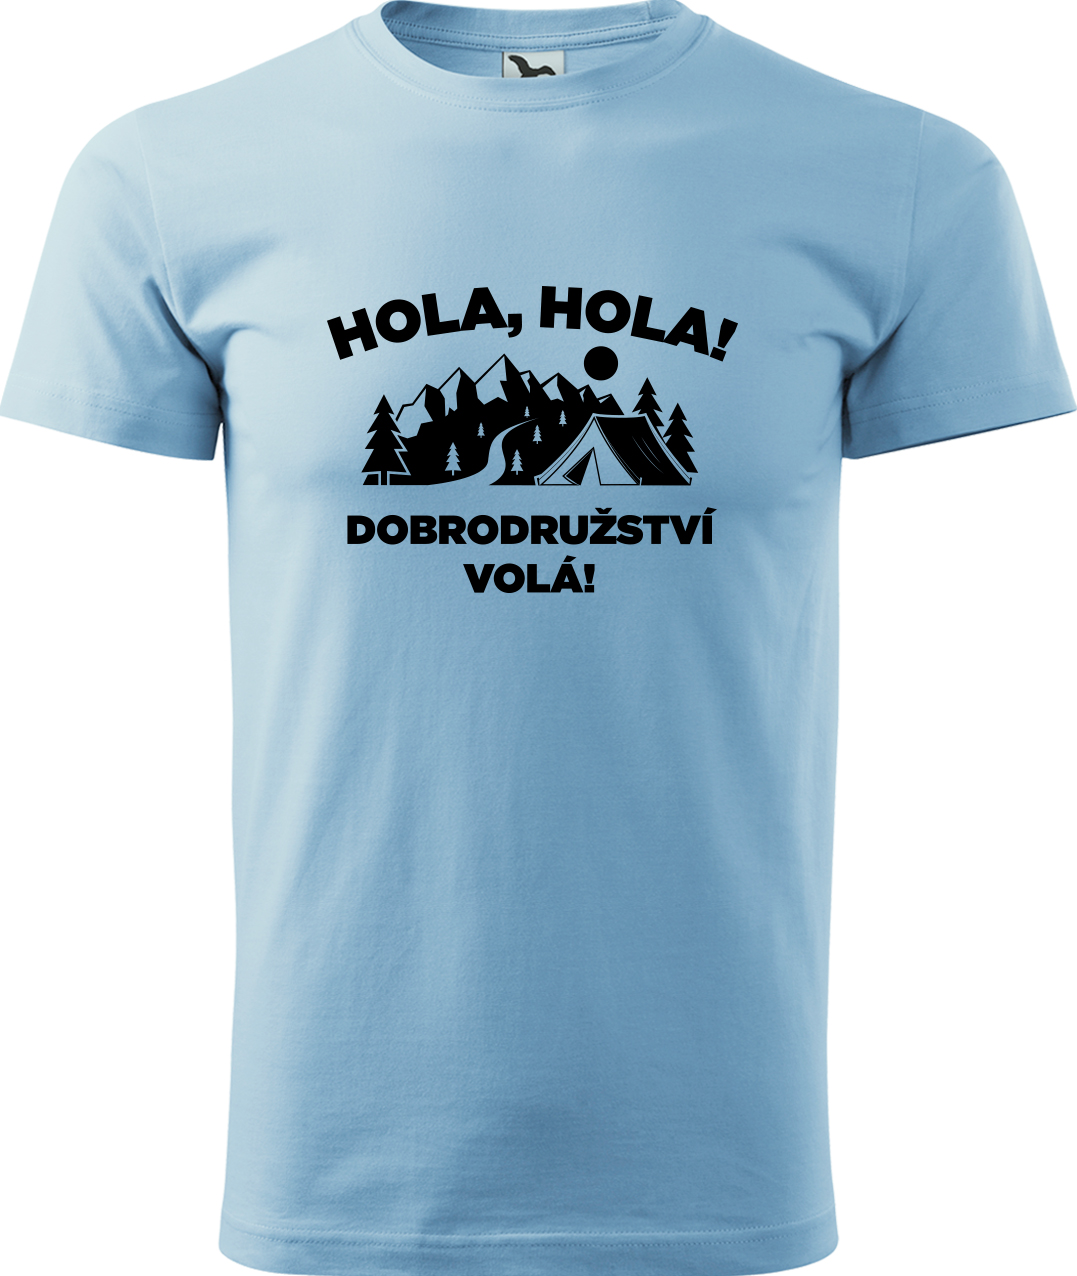 Pánské cestovatelské tričko - Hola hola! Dobrodružství volá! Velikost: S, Barva: Nebesky modrá (15), Střih: pánský